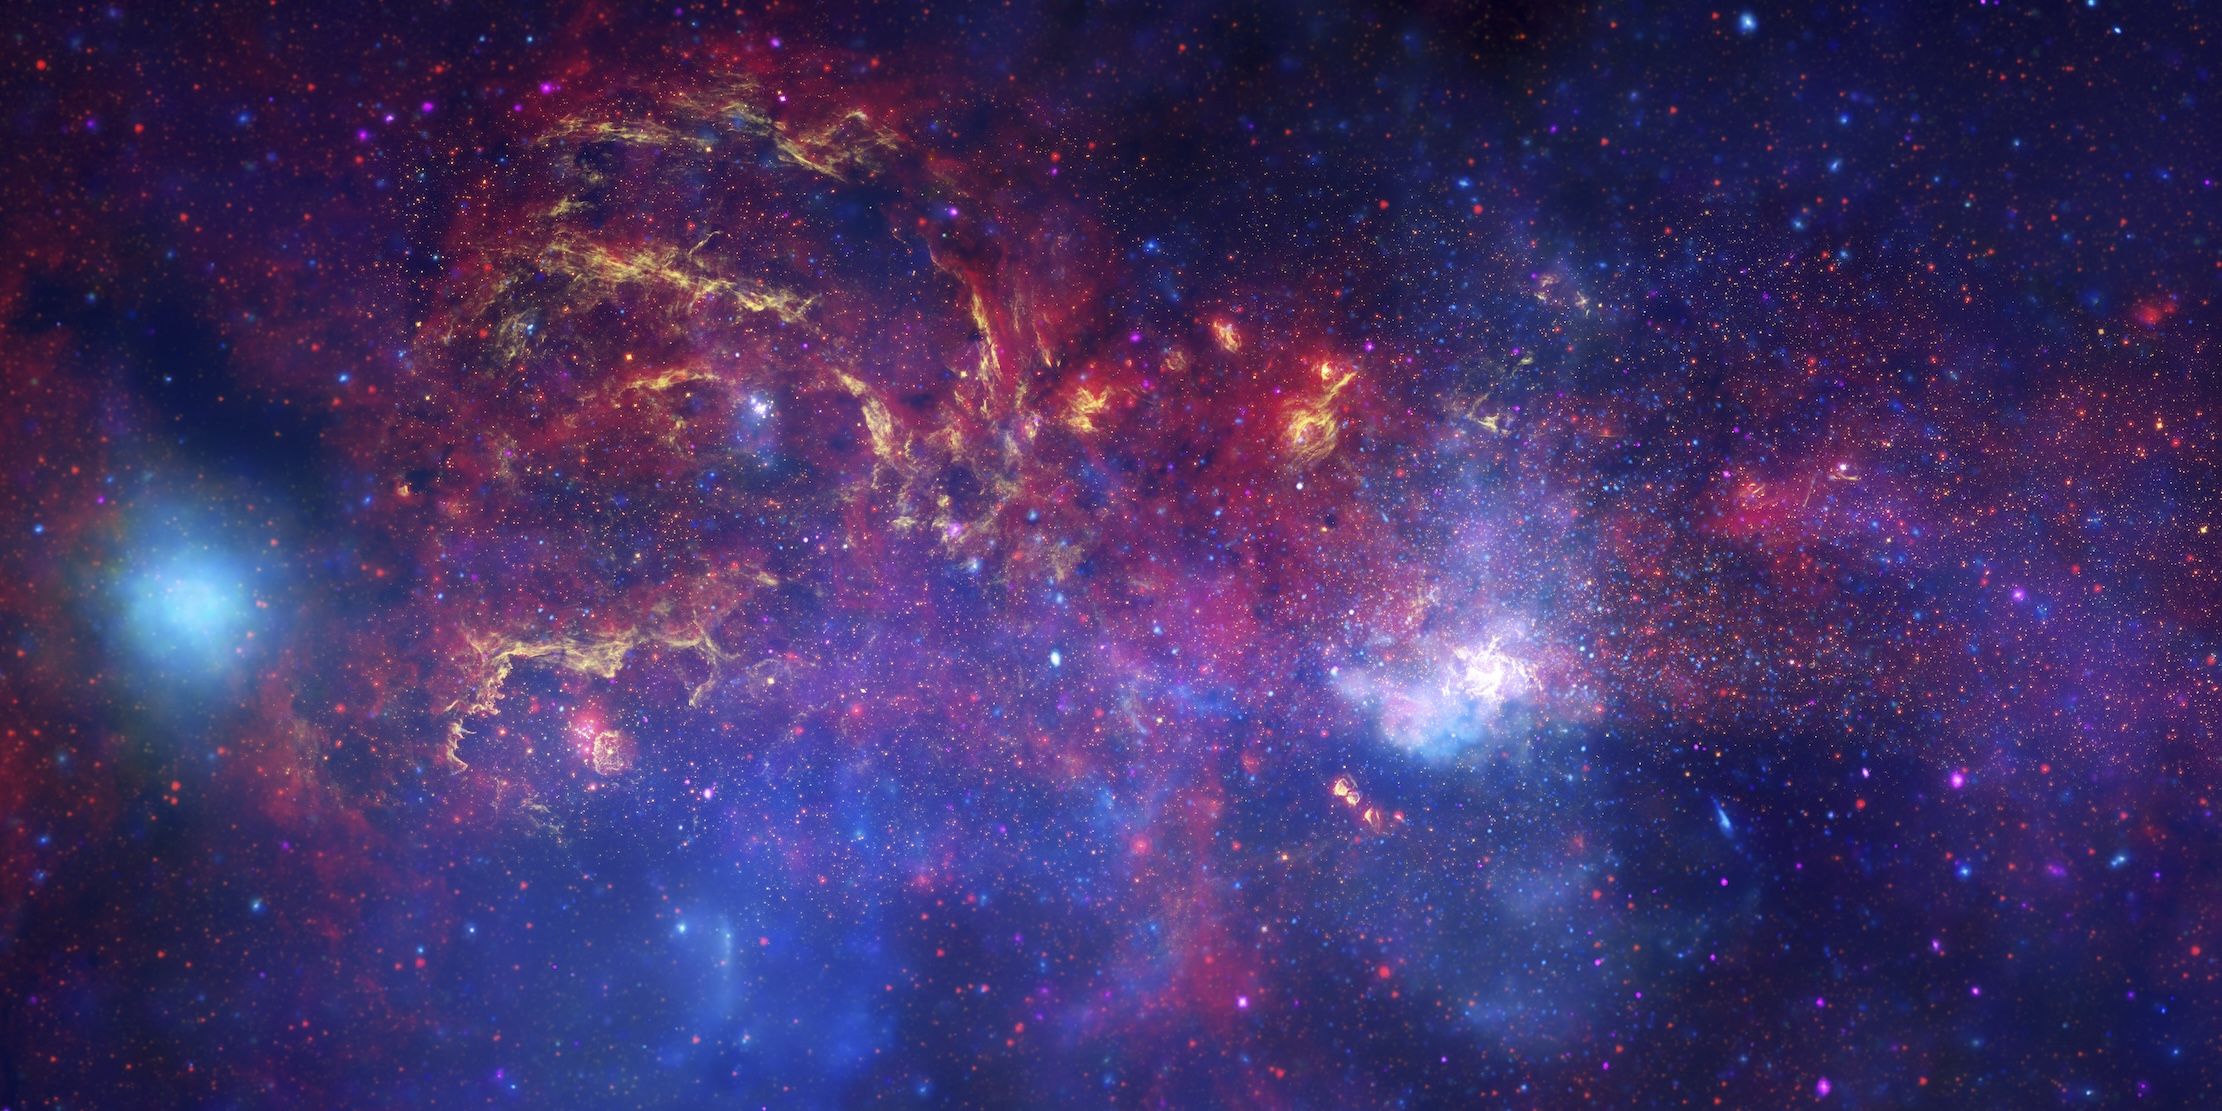 U 2009. godini, svemirski teleskop Hubble, svemirski teleskop Spitzer i Chandra X-zračna opservatorija – surađivali su kako bi proizveli neviđenu sliku središnjeg dijela naše galaksije Mliječne Staze. Autori: NASA, ESA, SSC, CXC i STScI.